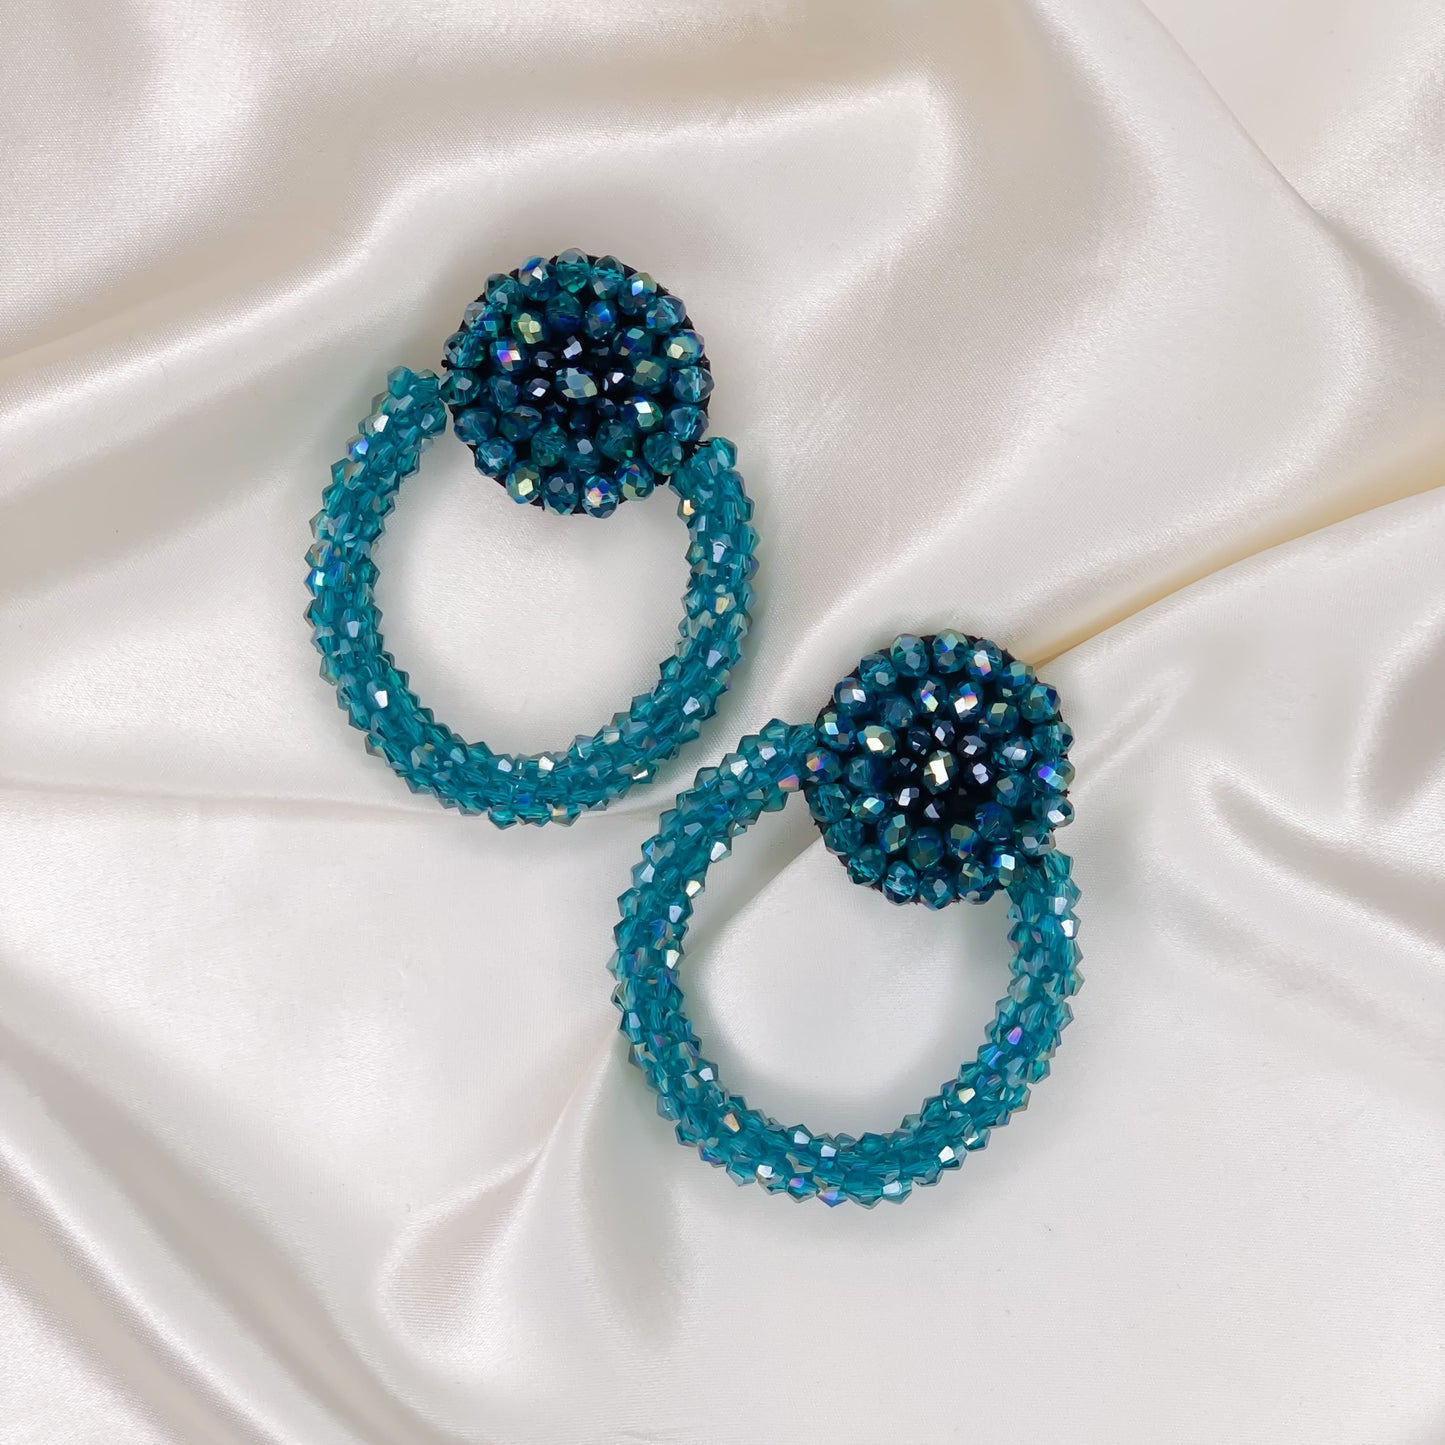 Crystal beaded earrings hoops